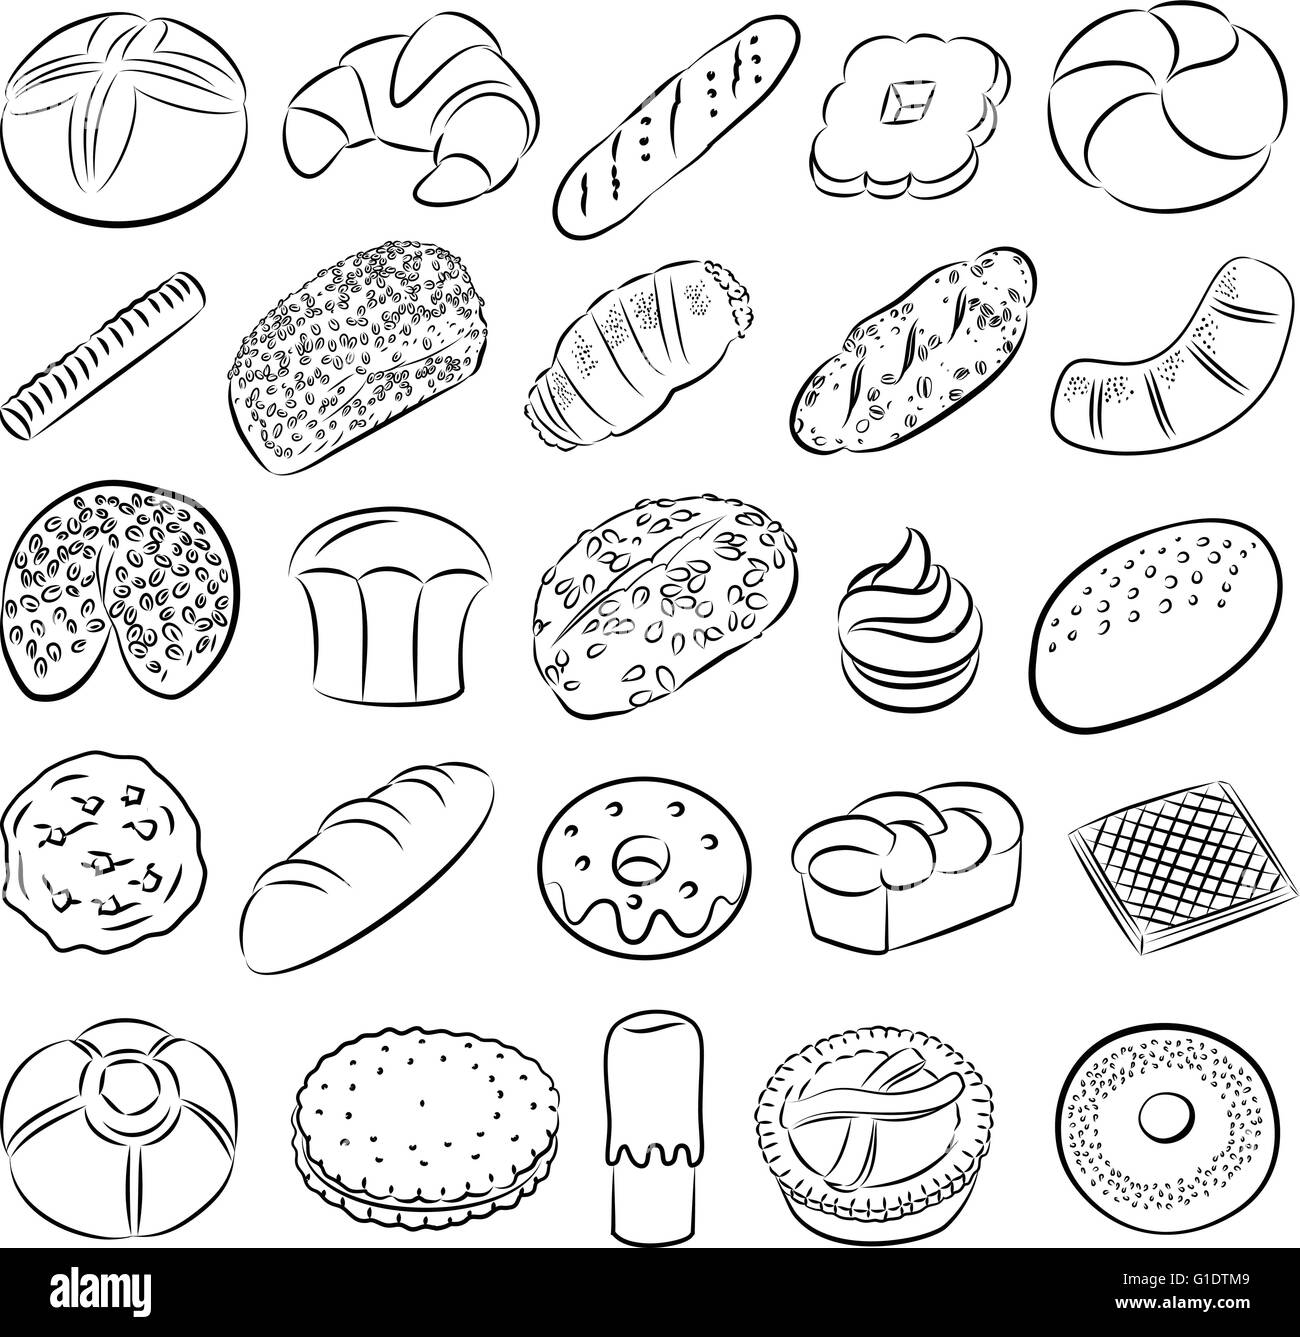 Vektor-Sammlung von Bäckerei und Konditorei Essen im Linienmodus Kunst Stock Vektor